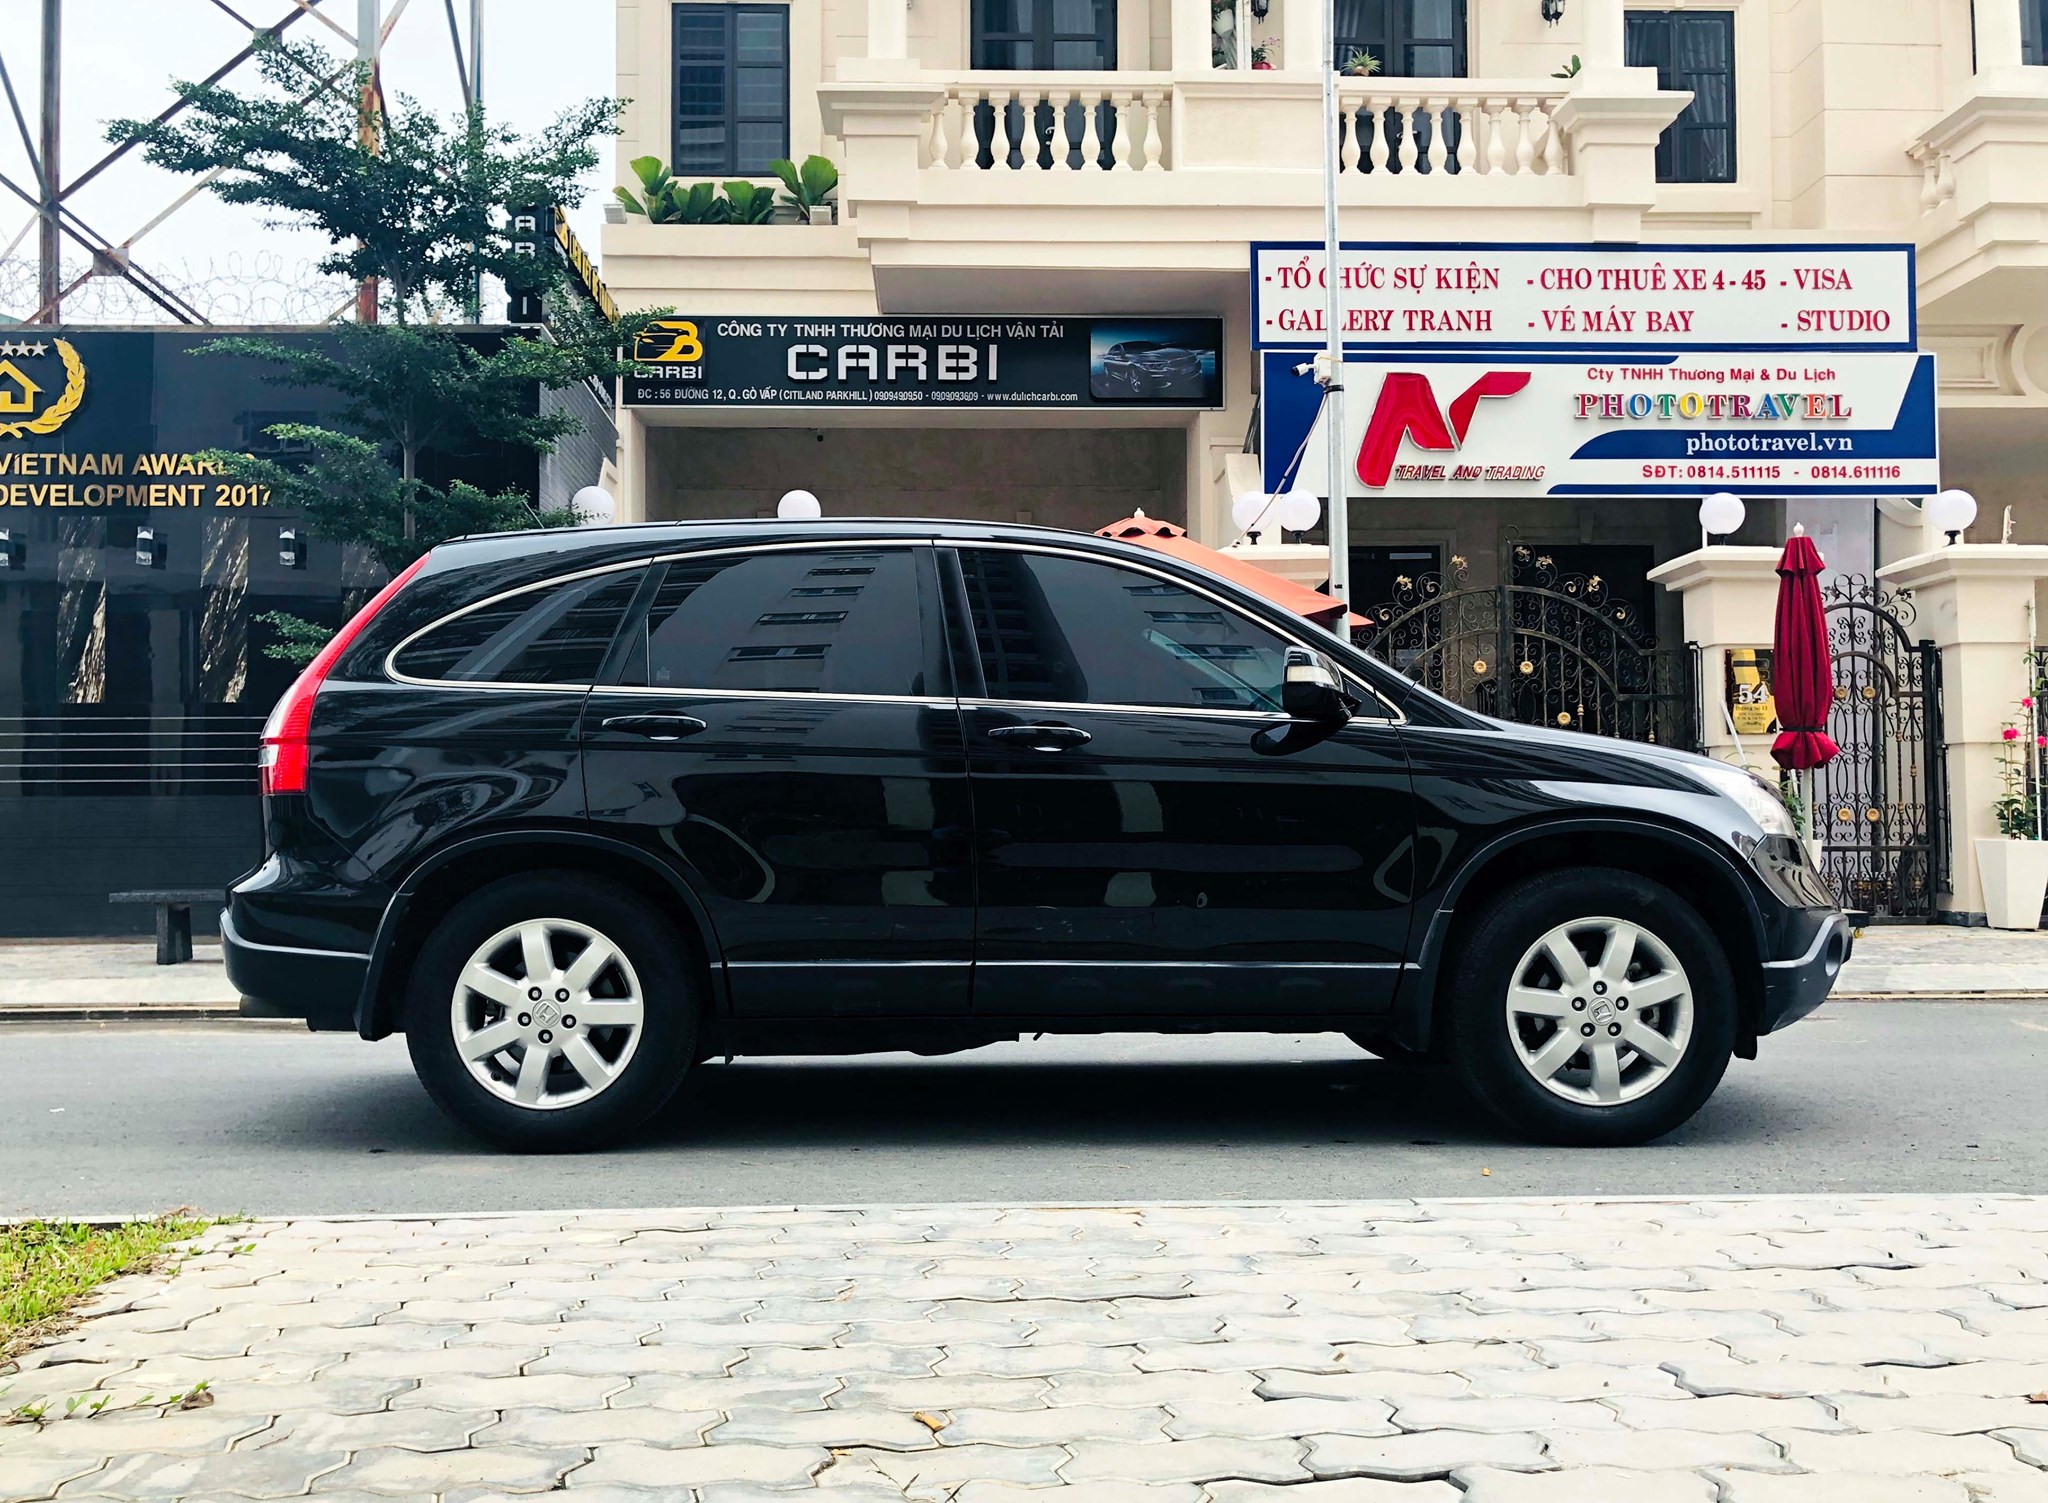 Honda CRV 10 năm tuổi giá hơn 400 triệu đồng tại Việt Nam